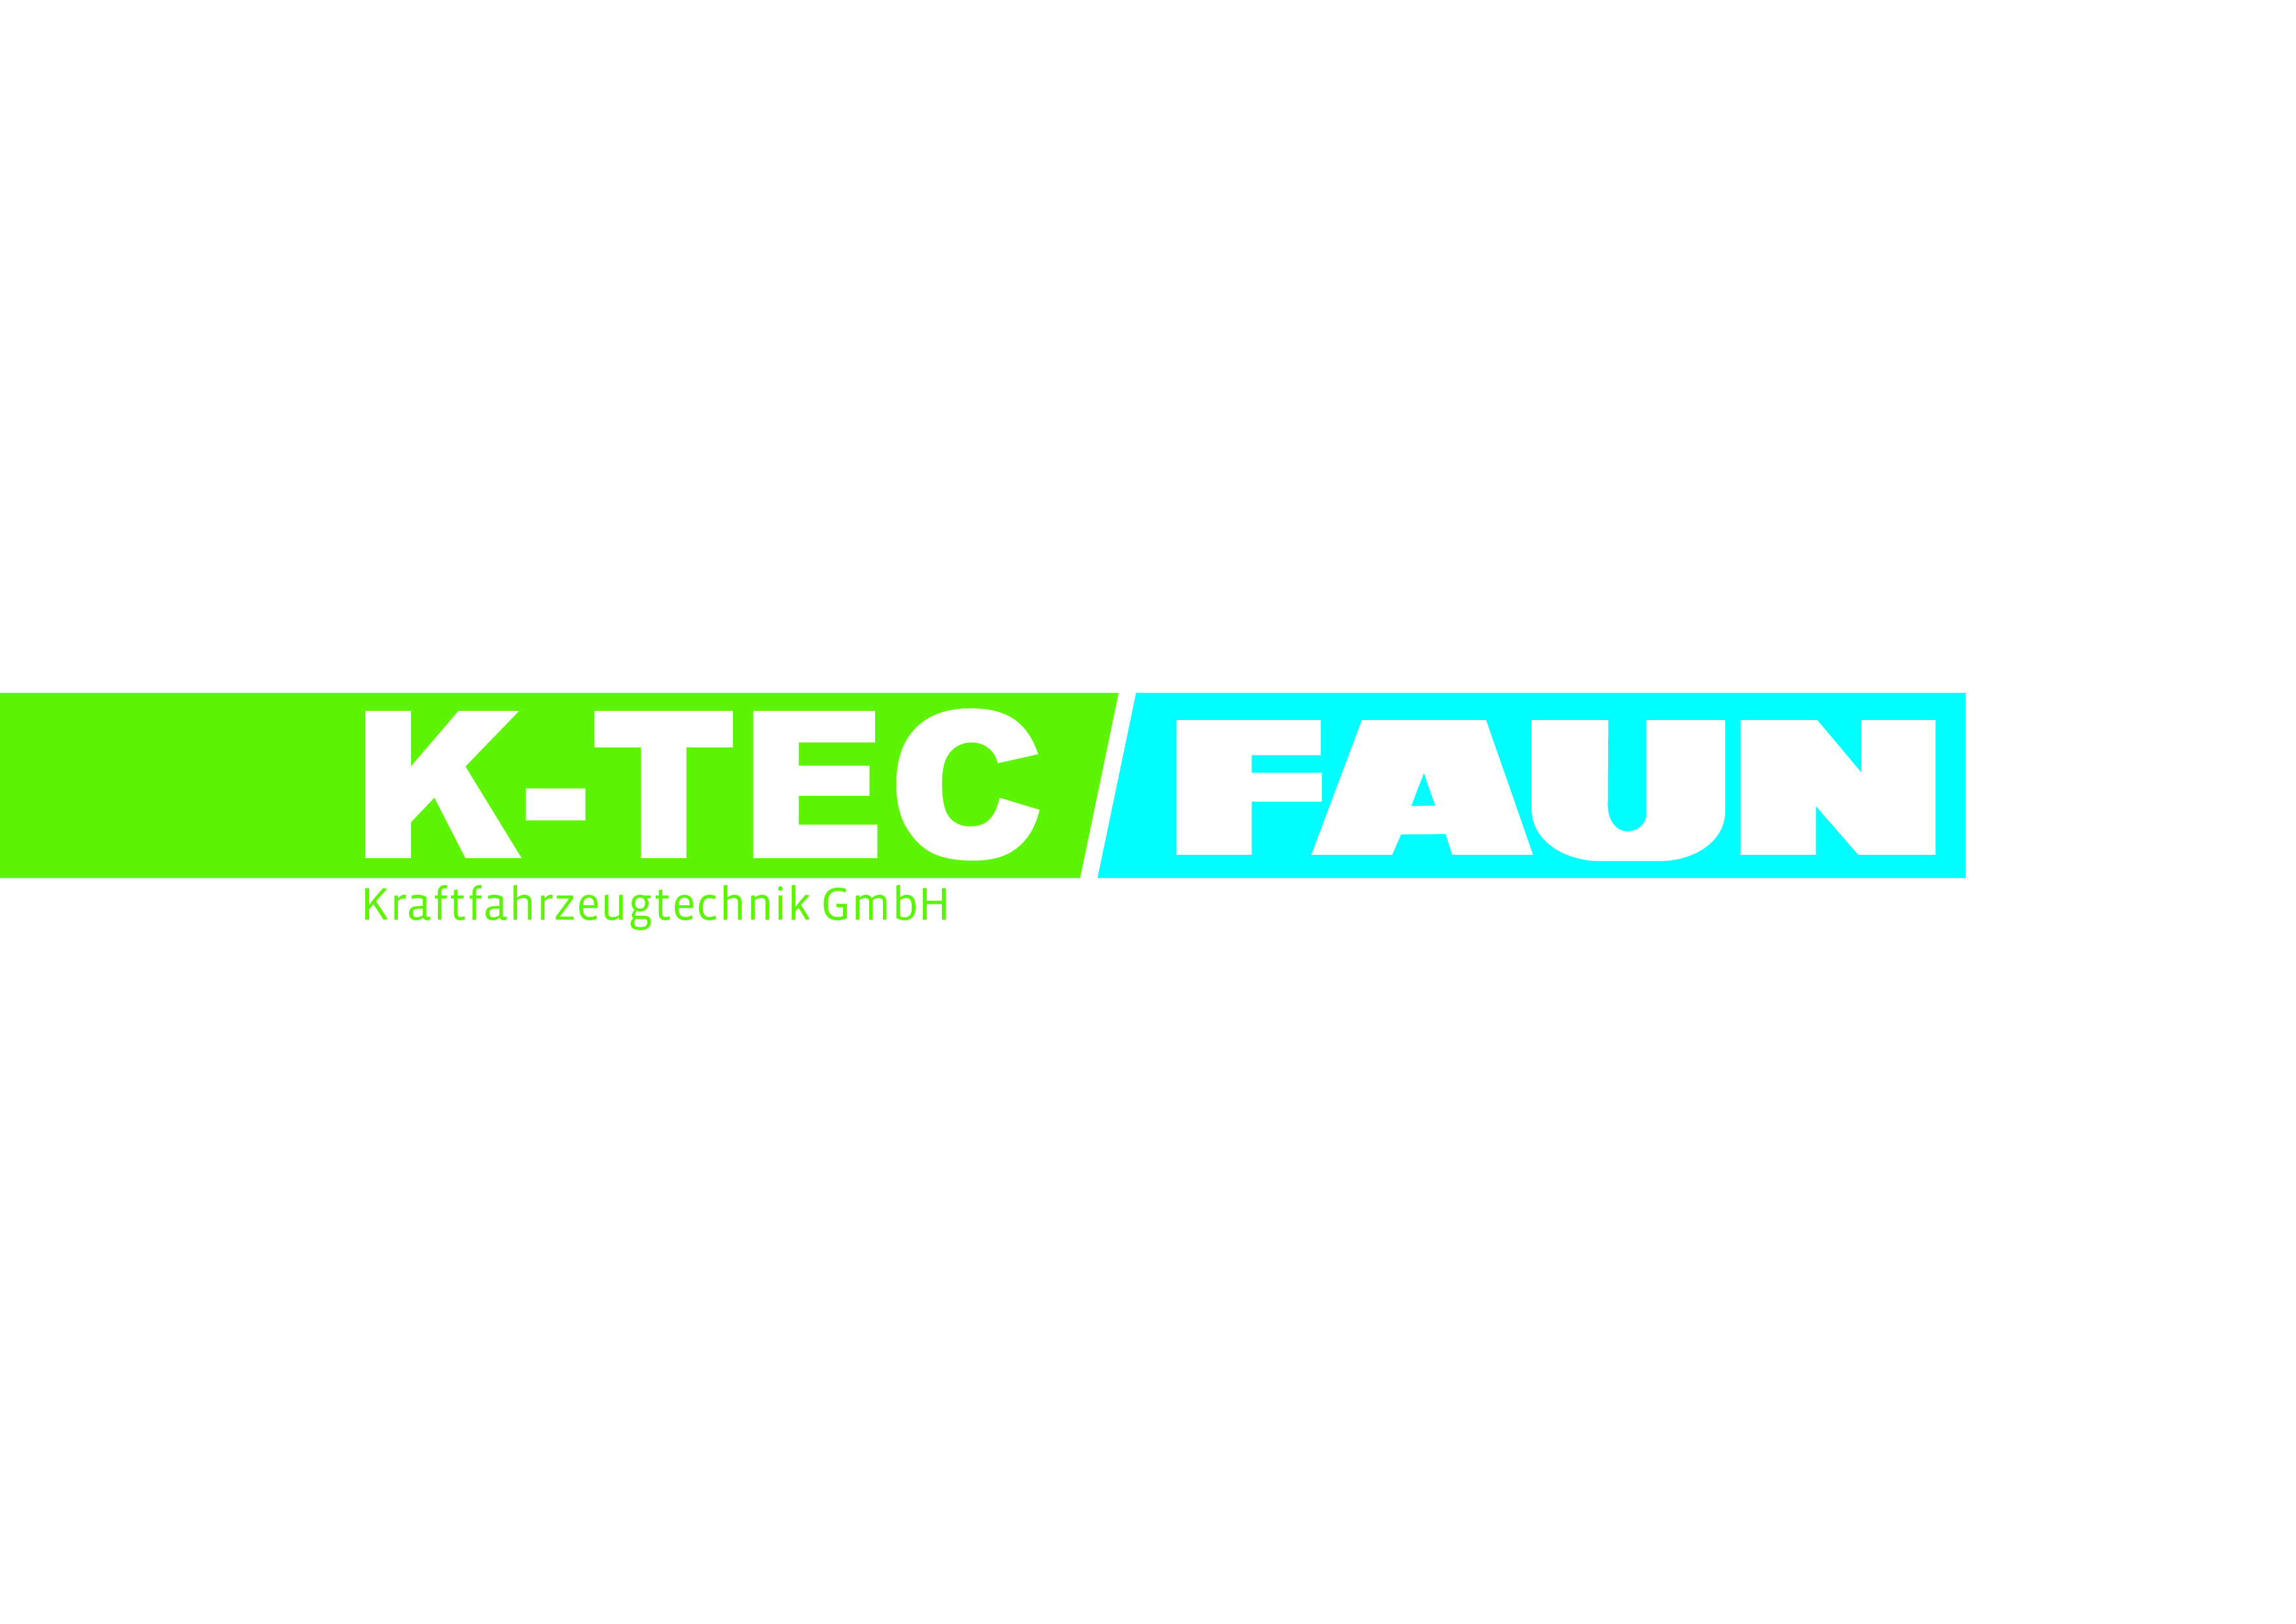 K-TEC FAUN Kraftfahrzeugtechnik GmbH